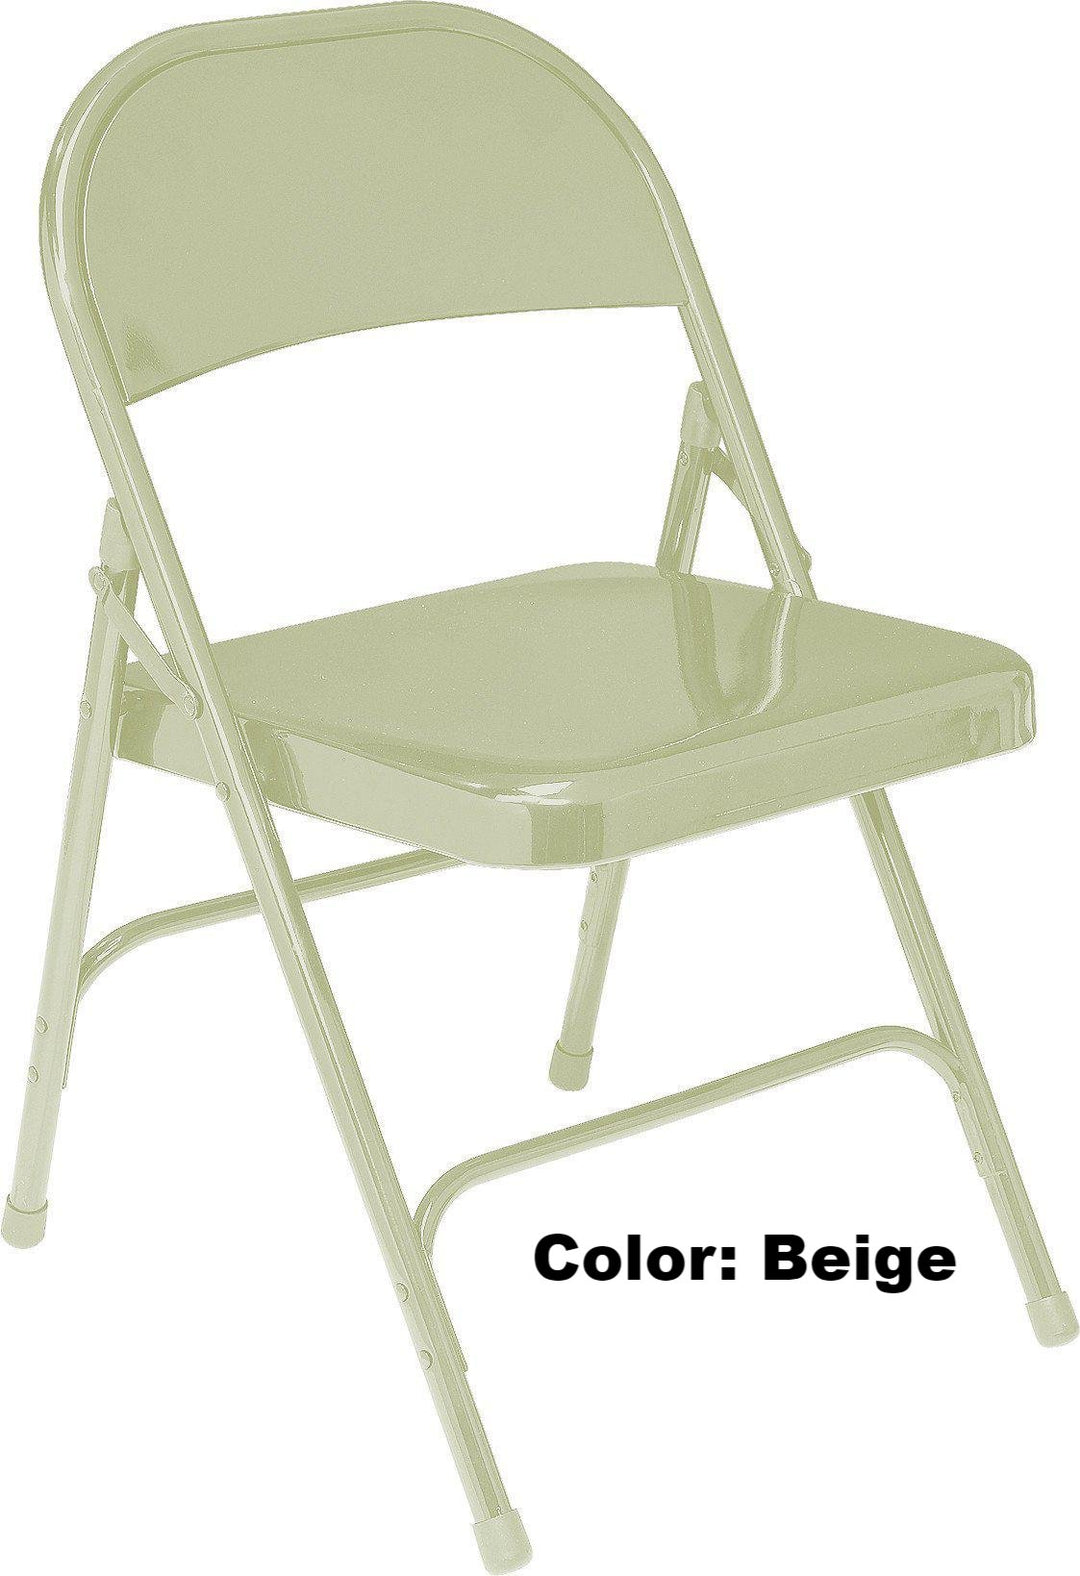 Banquet Chair Model 50 Series Standard All-Steel Folding